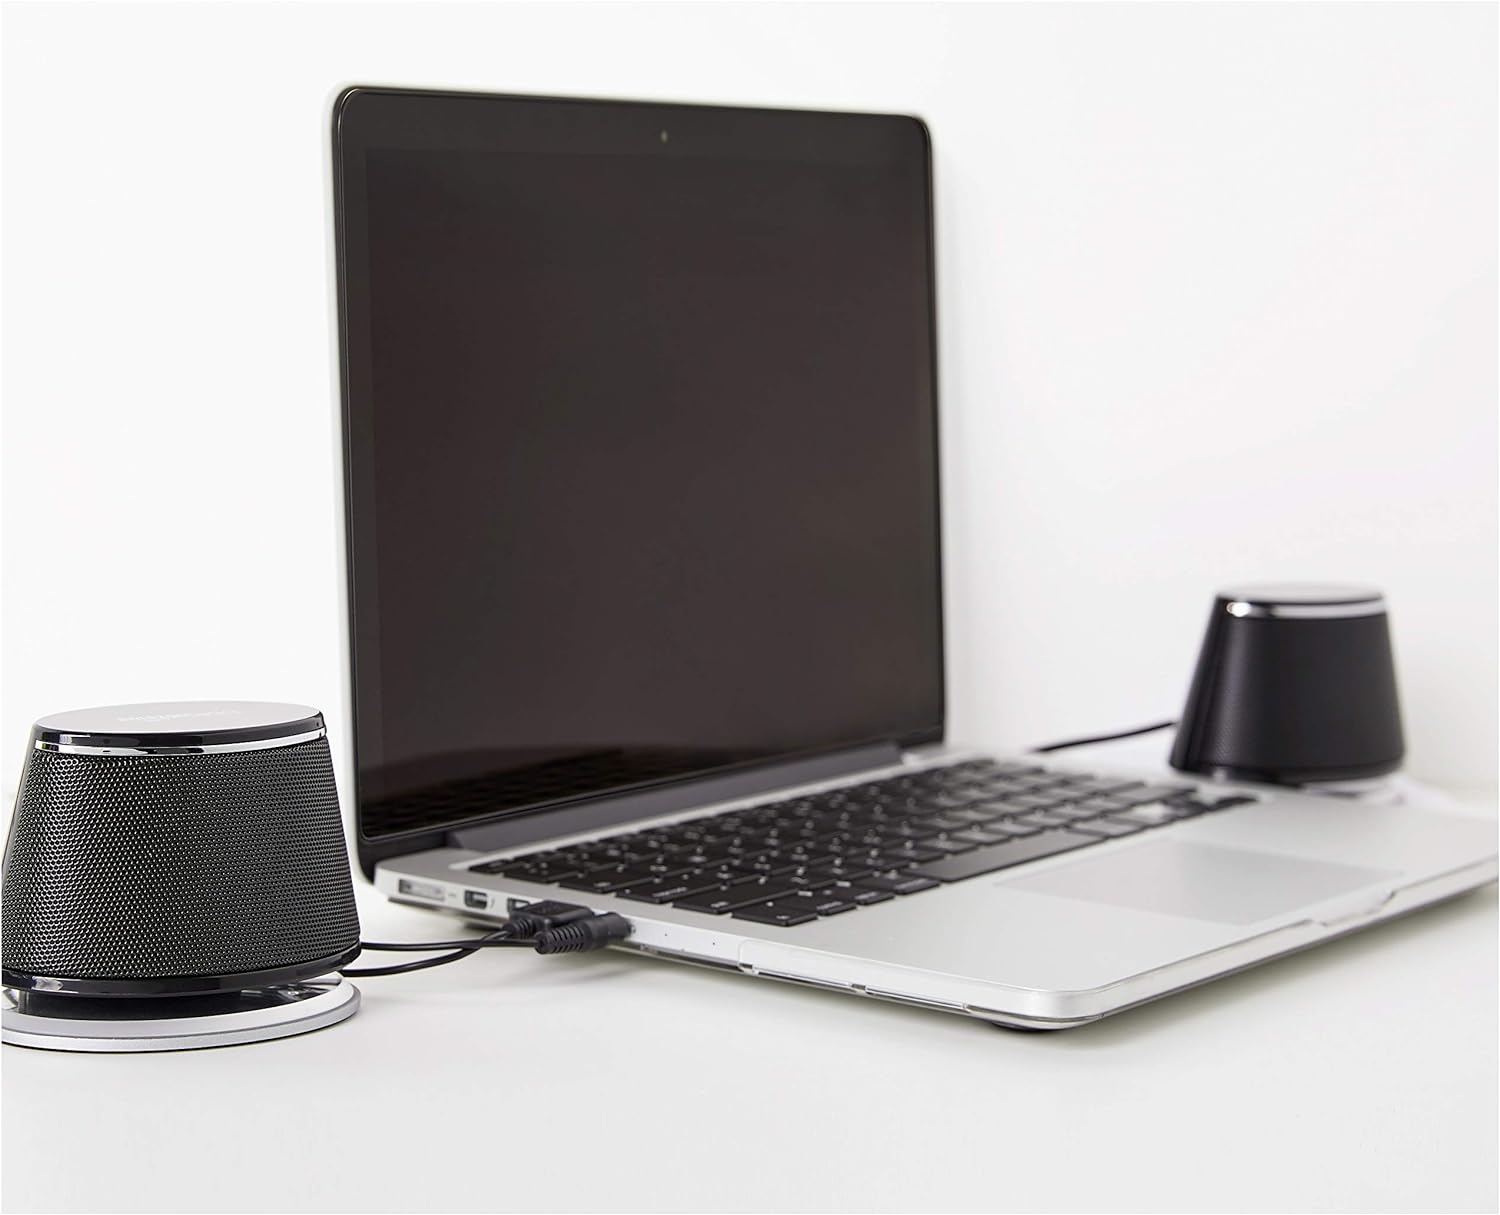 Tienda Basics 2 altavoces USB Plug-n-Play para PC o portátil, color negro Juego